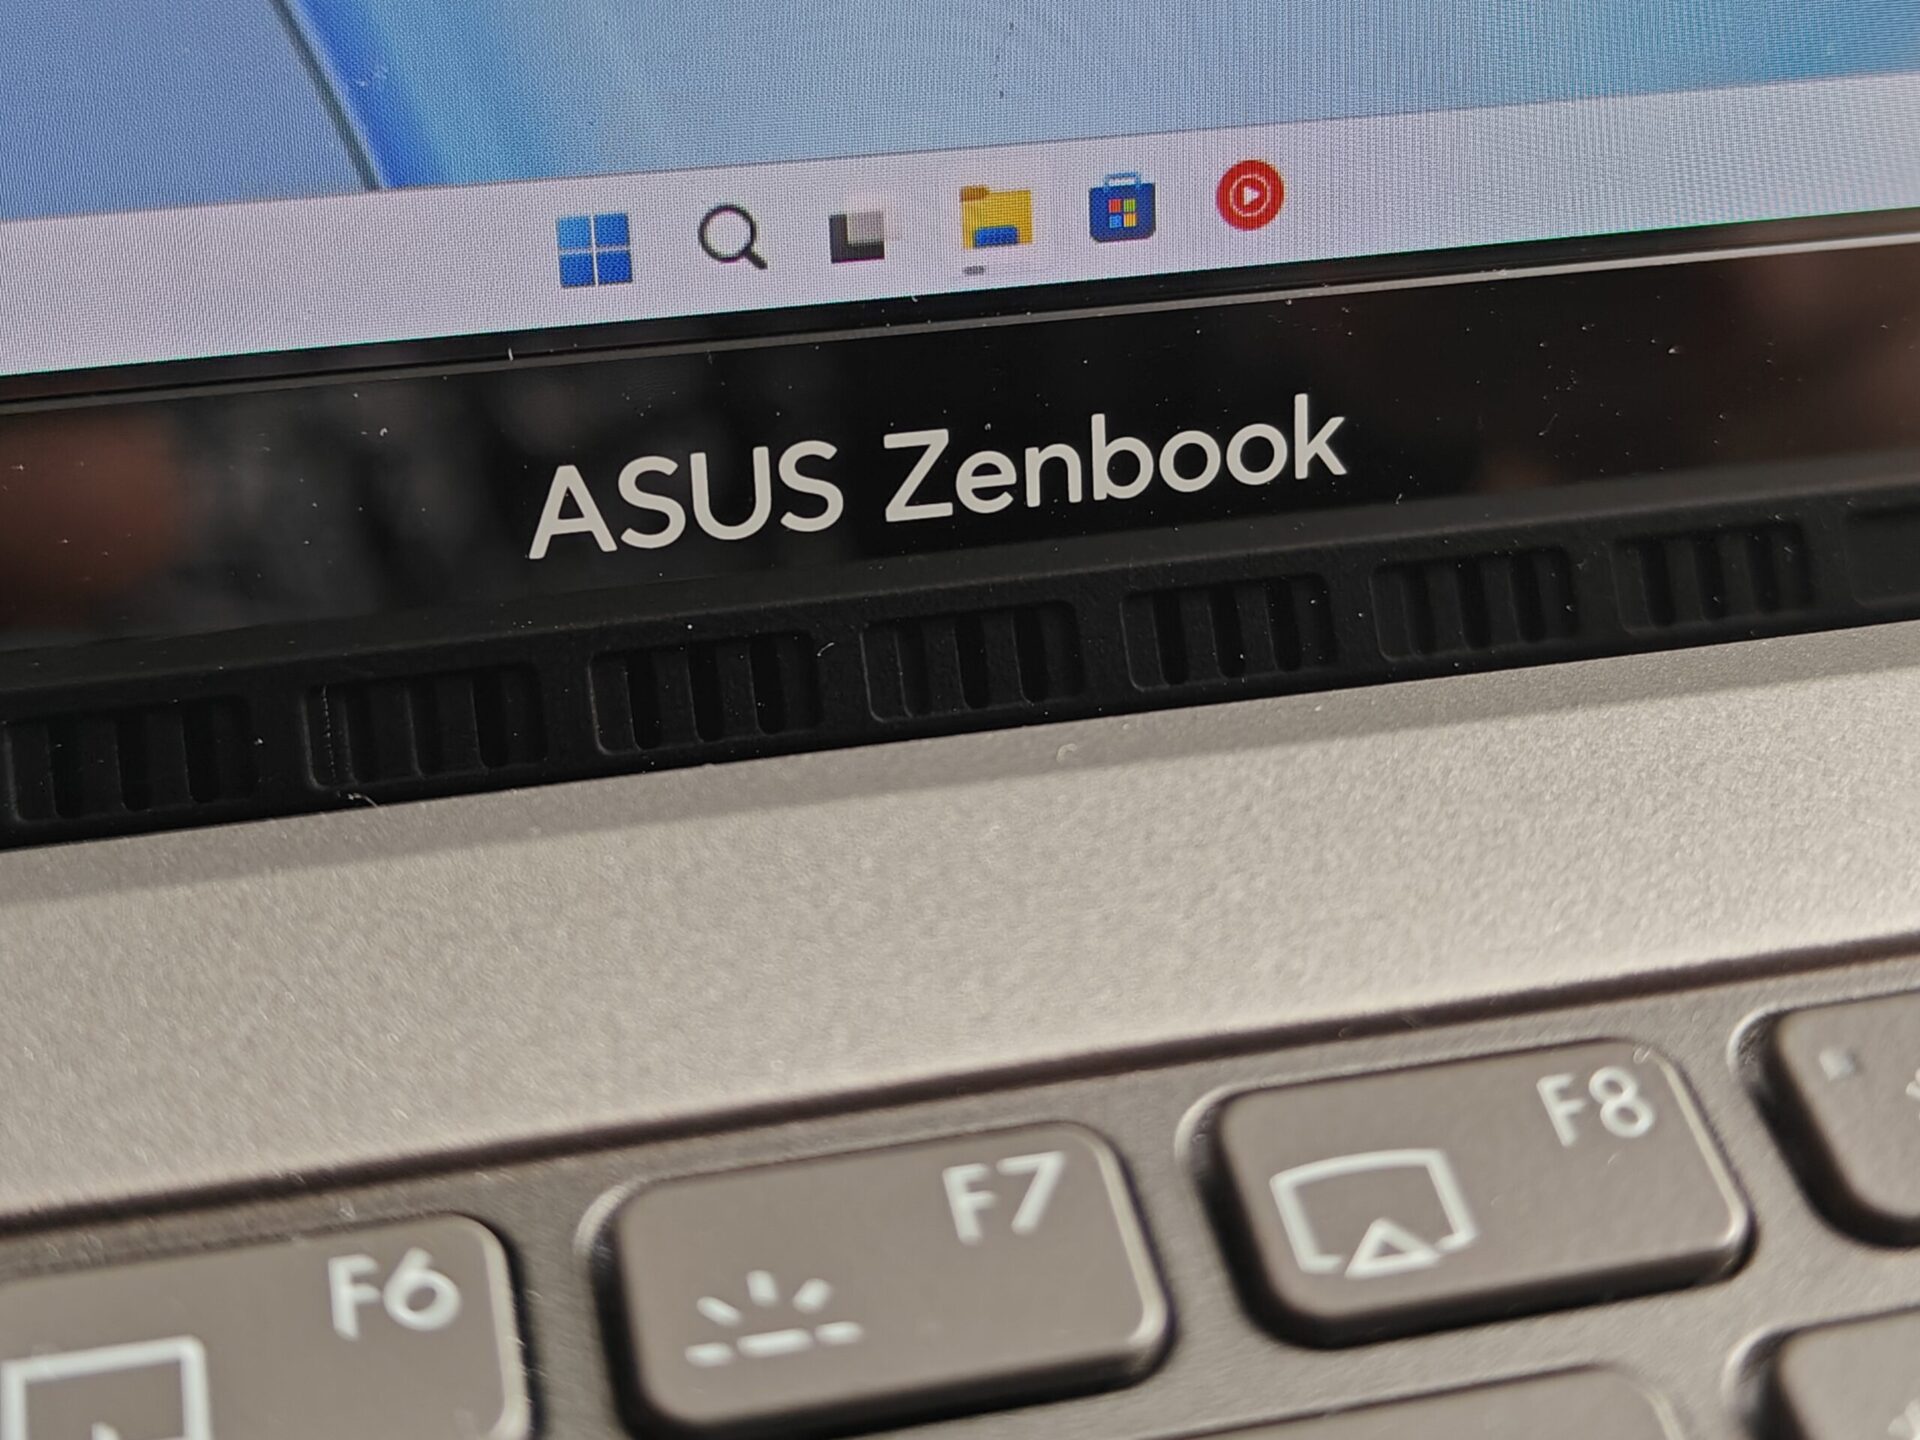 Asus Zenbook S13 OLED - Kilogram porządnego sprzętu - Recenzja